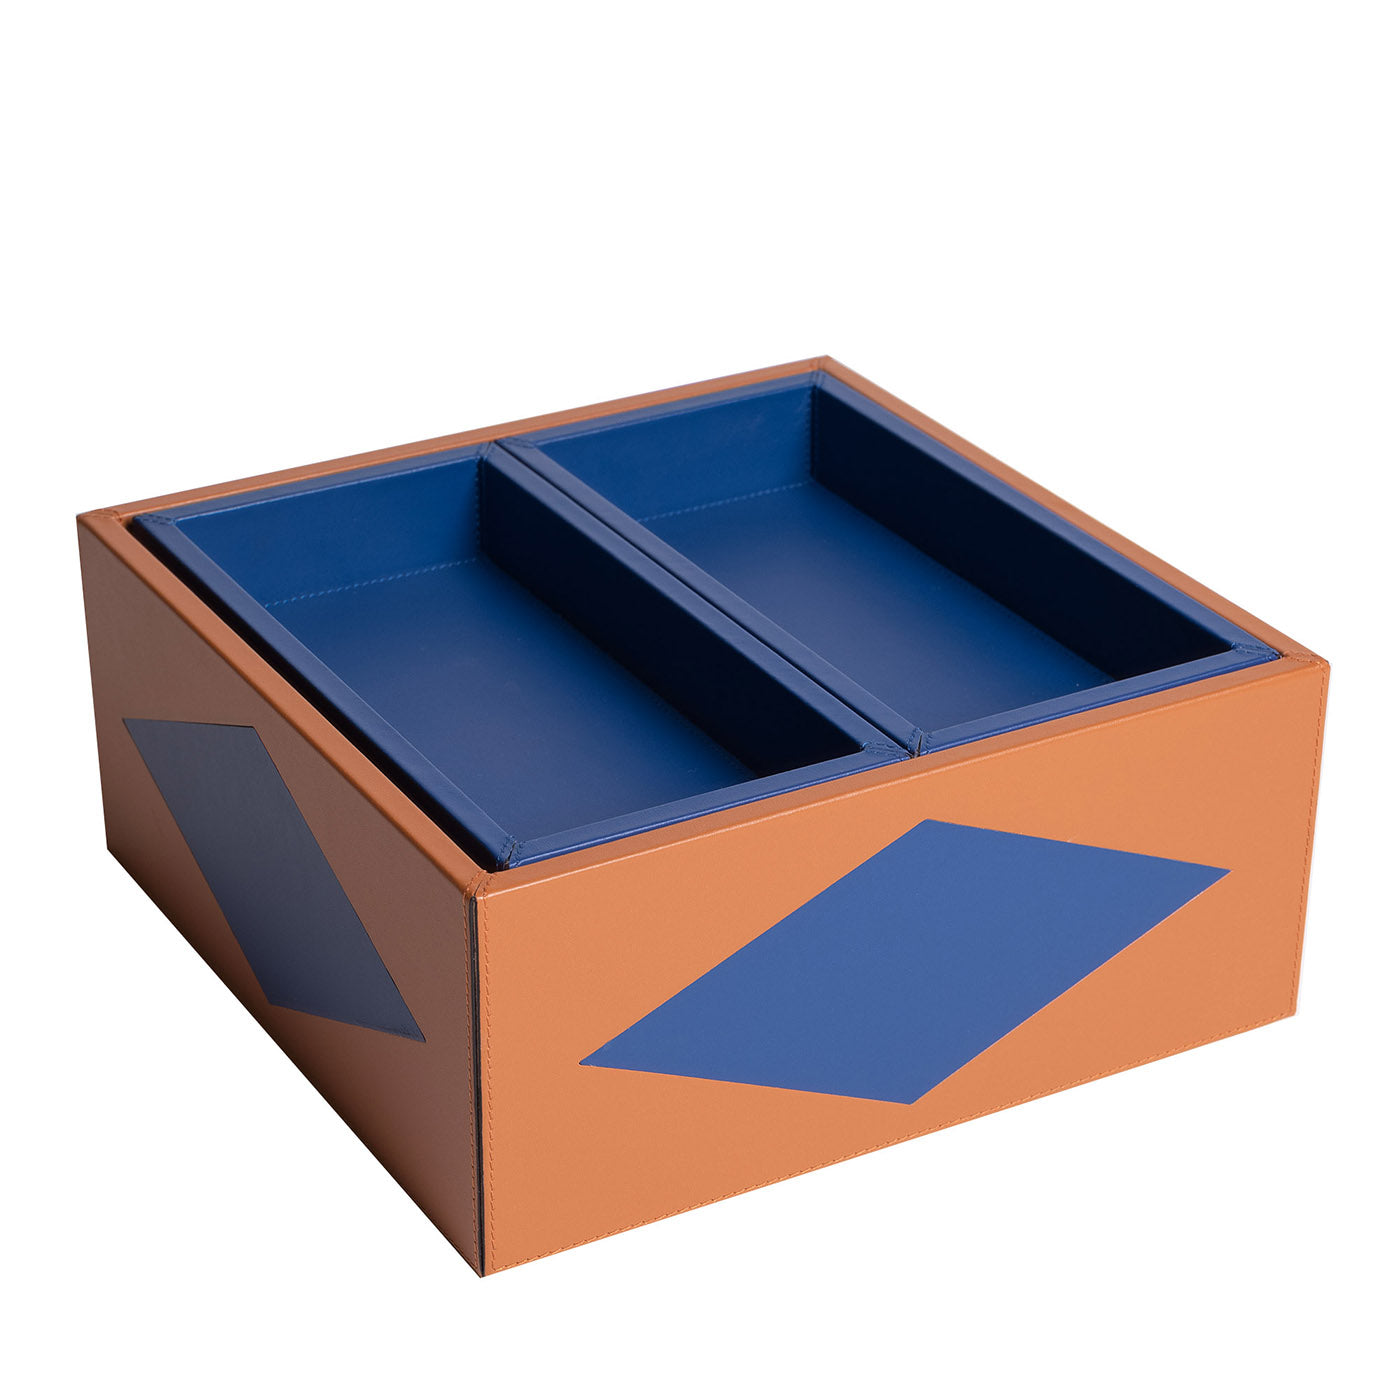 Intarsio Briolette Pecan y Ocean Blue Duo Box - Vista principal